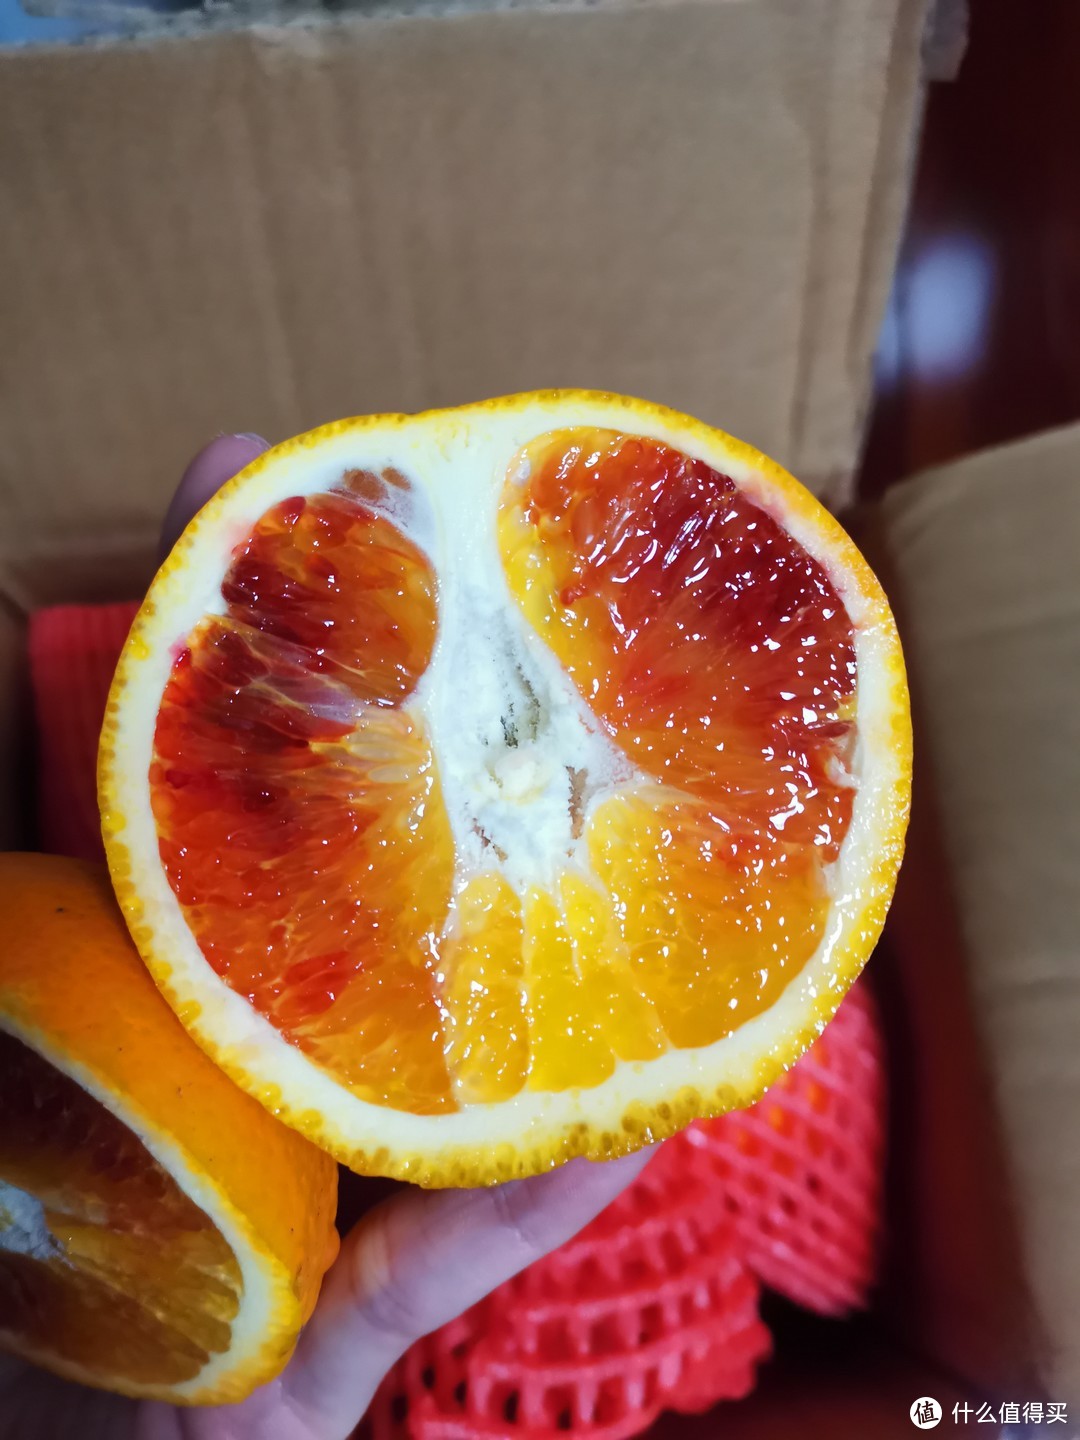 一直以为血橙非常的贵，买了之后才发现还挺平价的